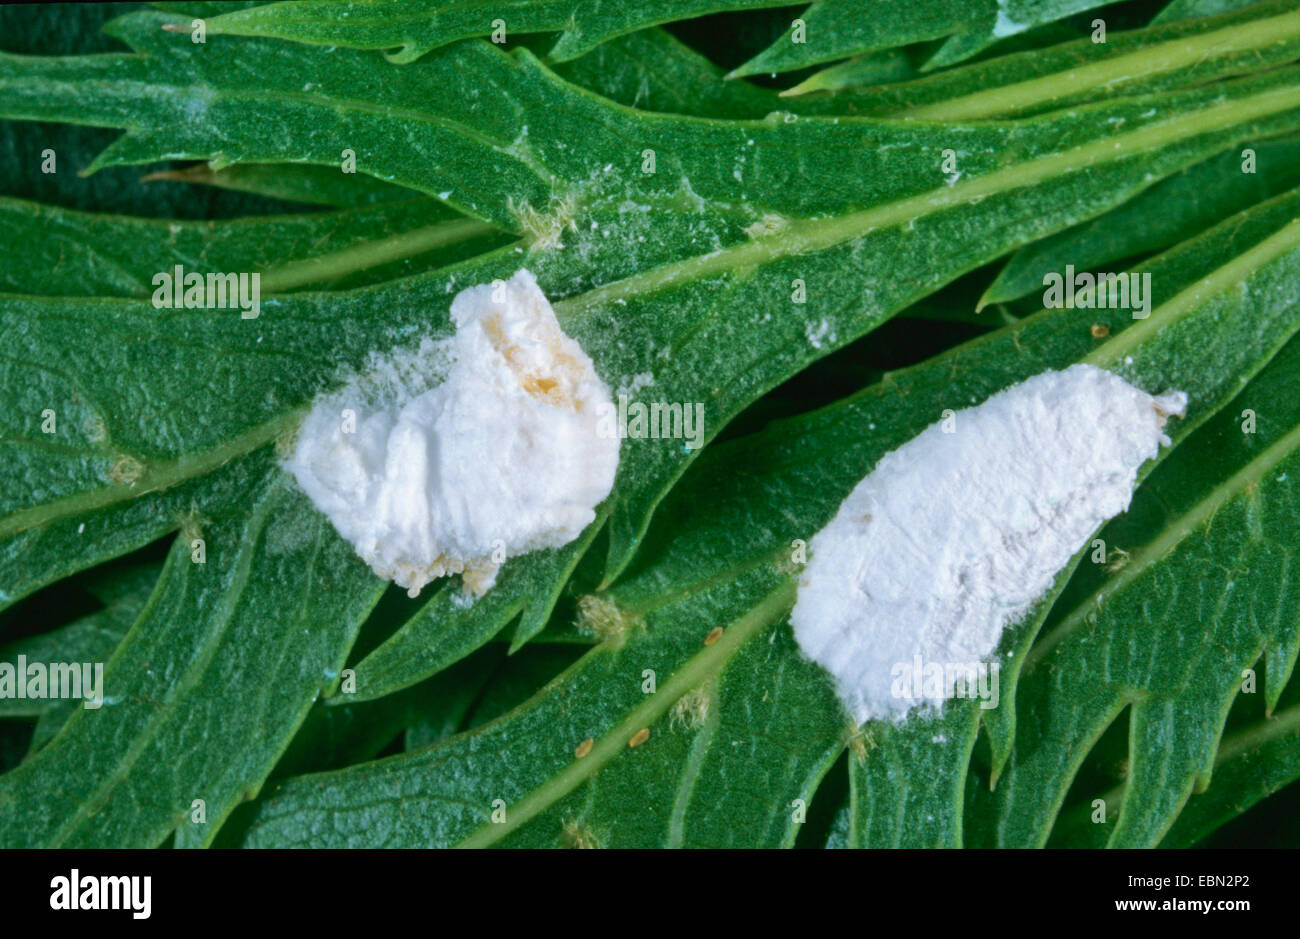 Apple mealybug (Phenacoccus aceris), two Apple mealybugs on a leaf, Germany Stock Photo